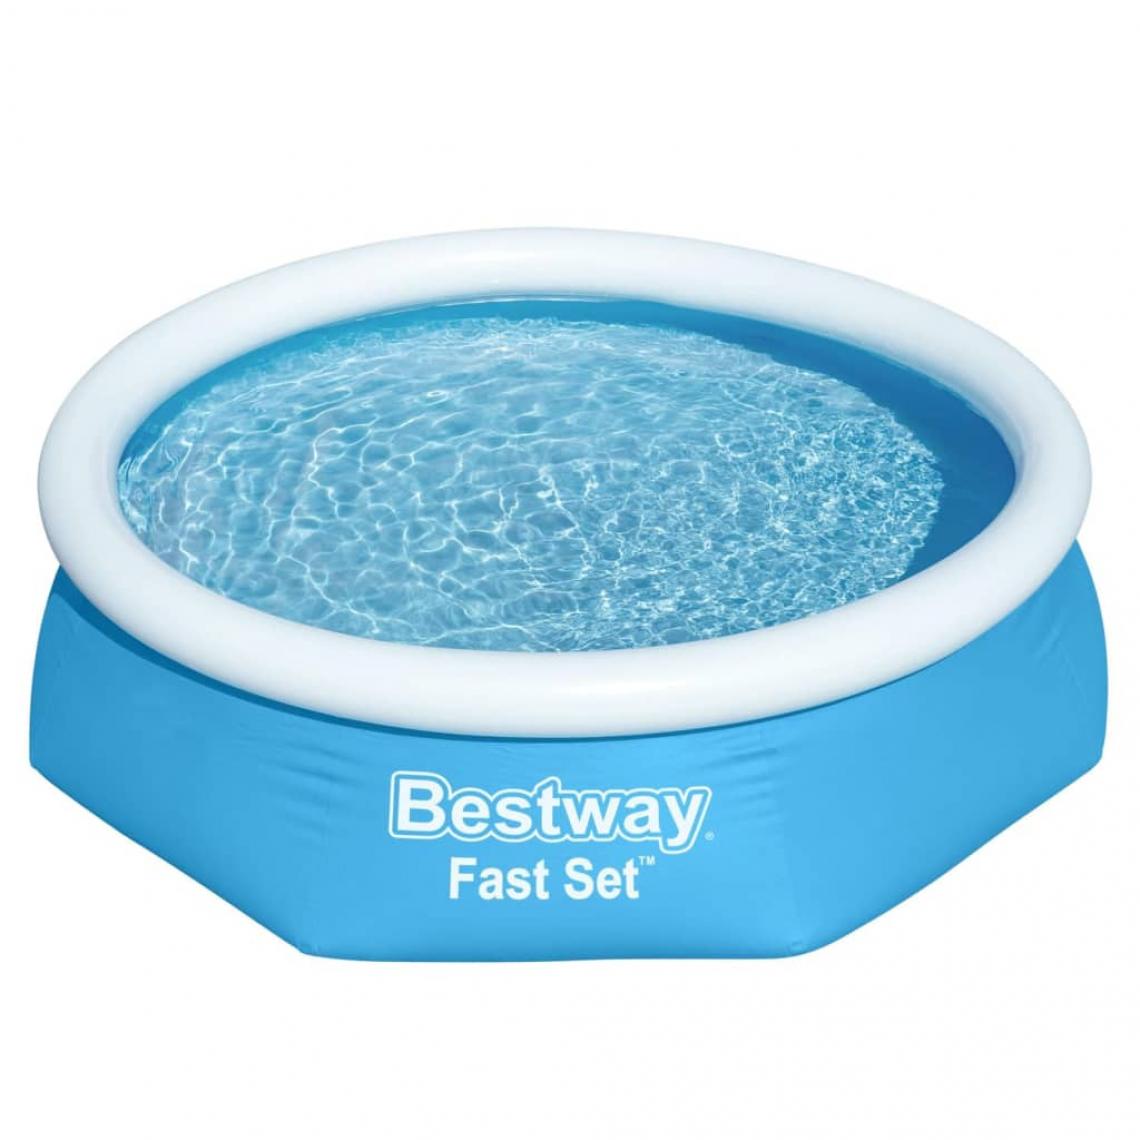 Bestway - Bestway Piscine ronde Fast Set 244x61 cm Bleu - Piscines autoportantes